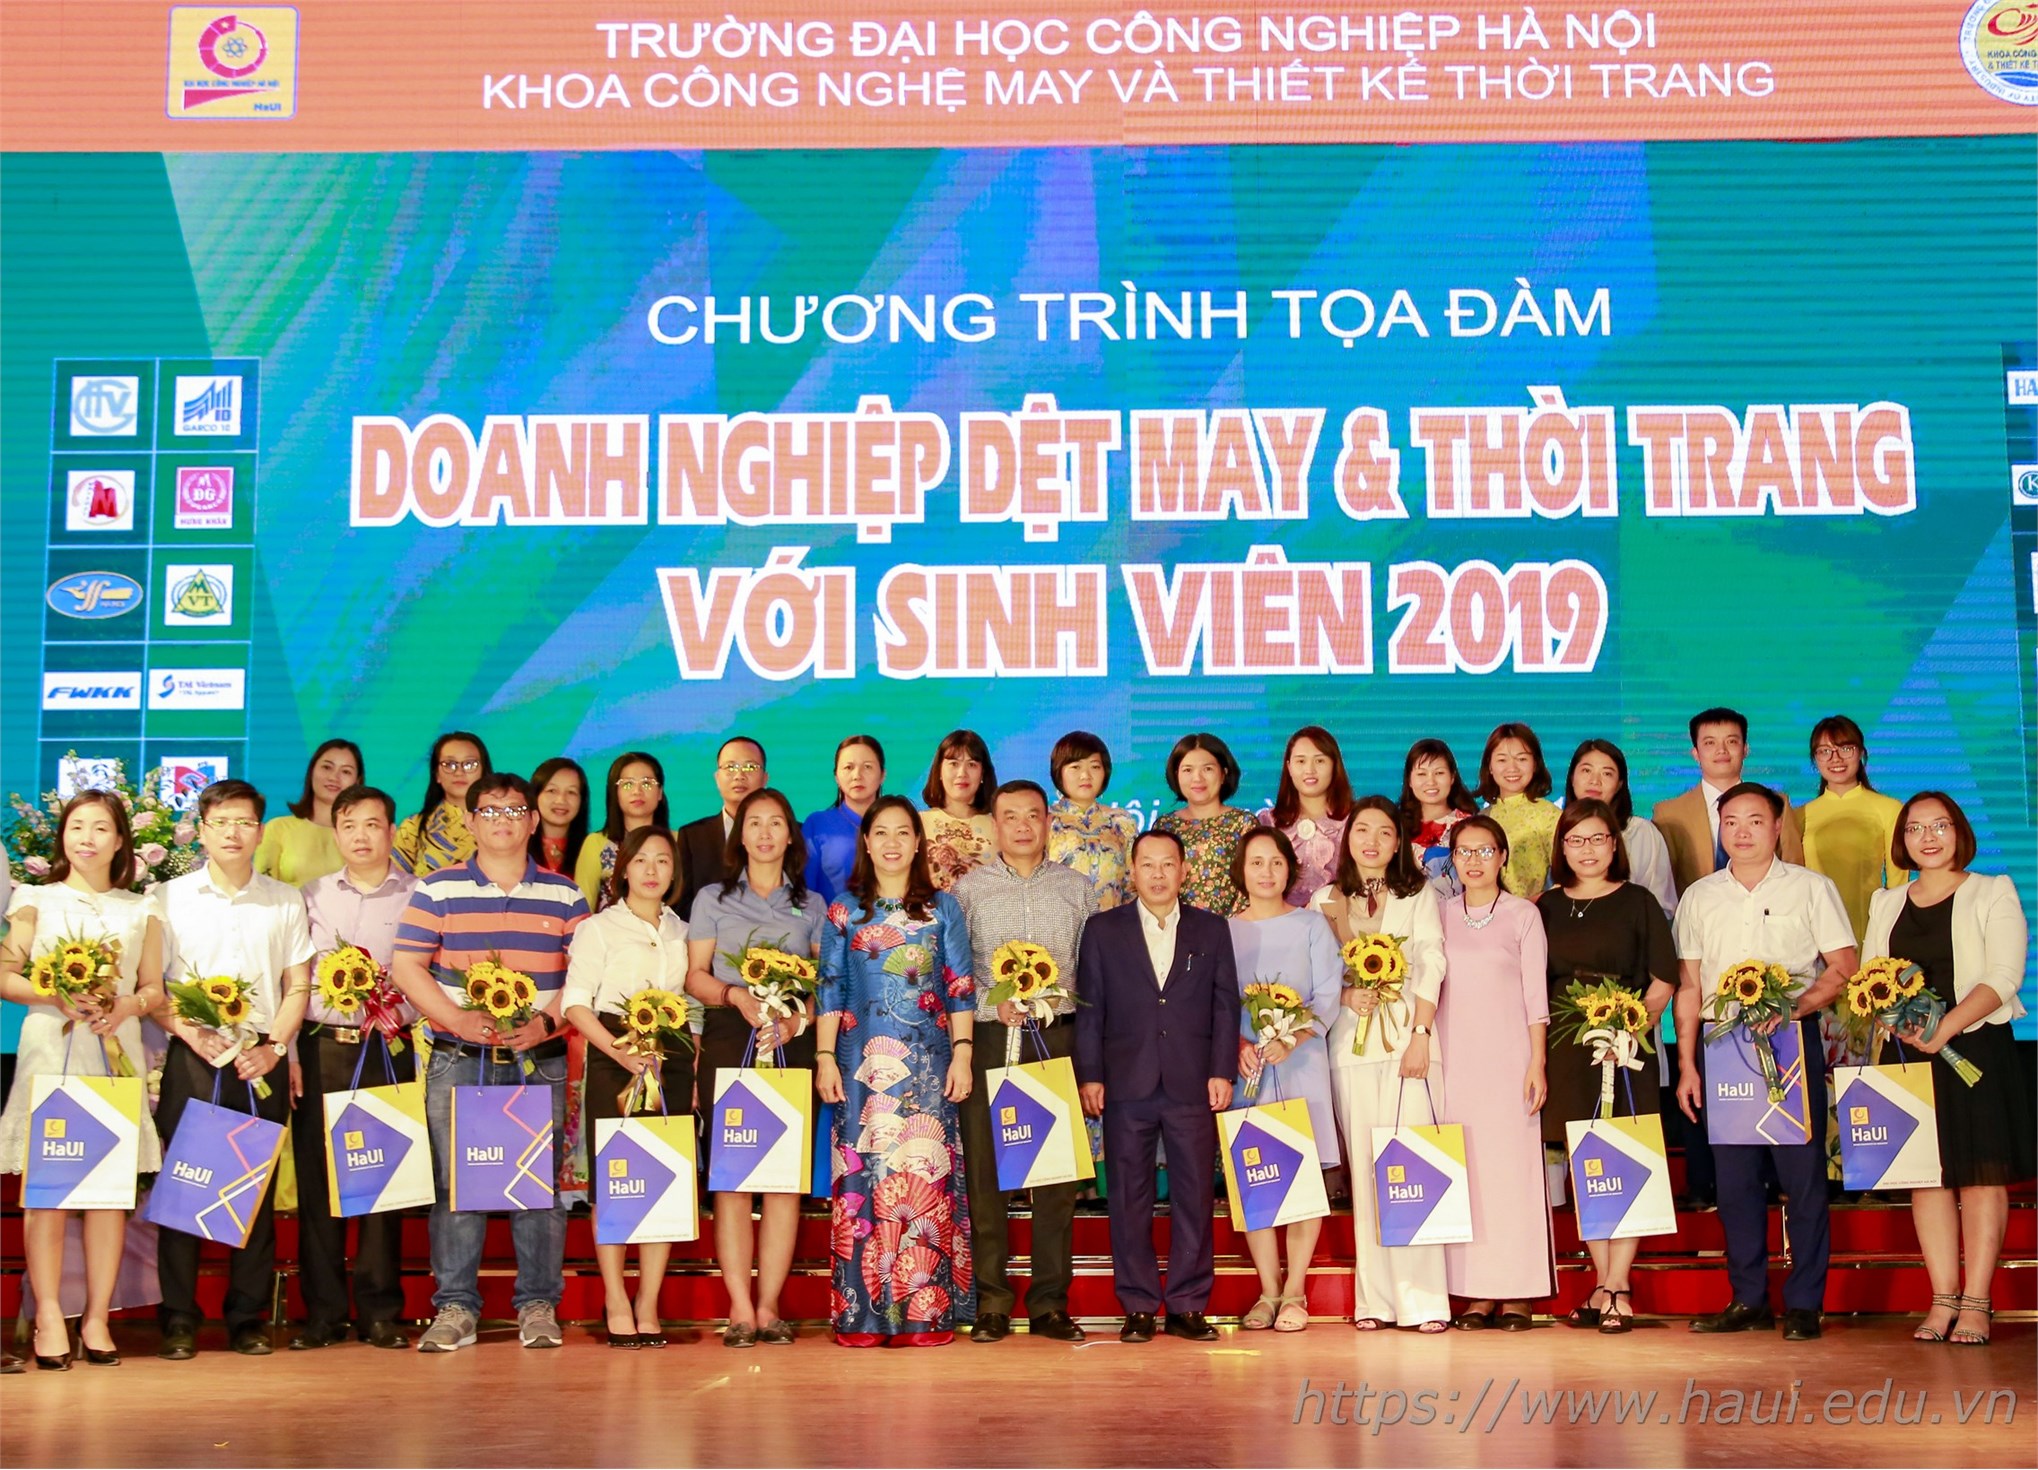 Tọa đàm Doanh nghiệp Dệt, May và Thời trang với sinh viên 2019 tại Đại học Công nghiệp Hà Nội